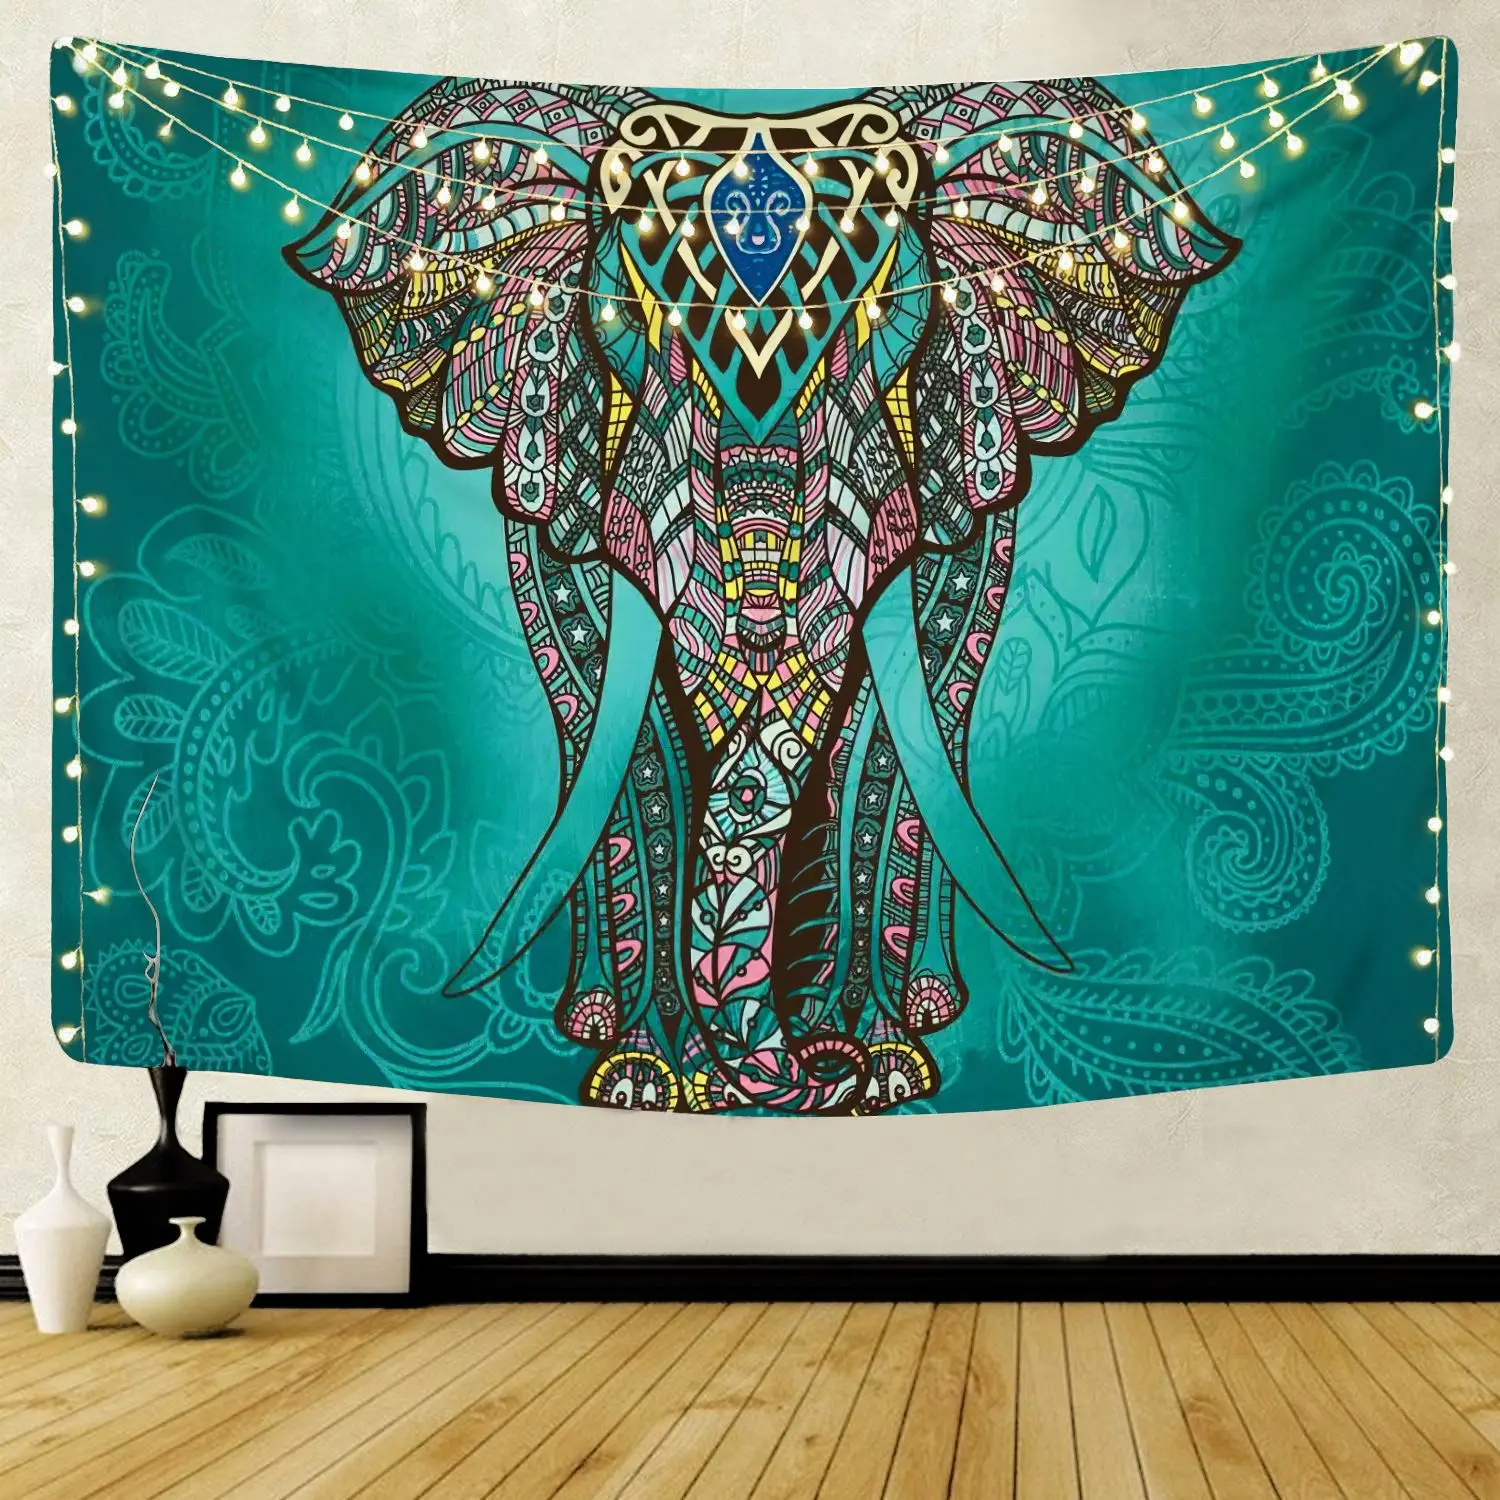 hecho a mano en la India Tapiz doble hecho a mano de Future Handmade tapicería manta de playa 100 % algodón para colgar en la pared decoración del hogar con diseño de elefante blanco y negro 